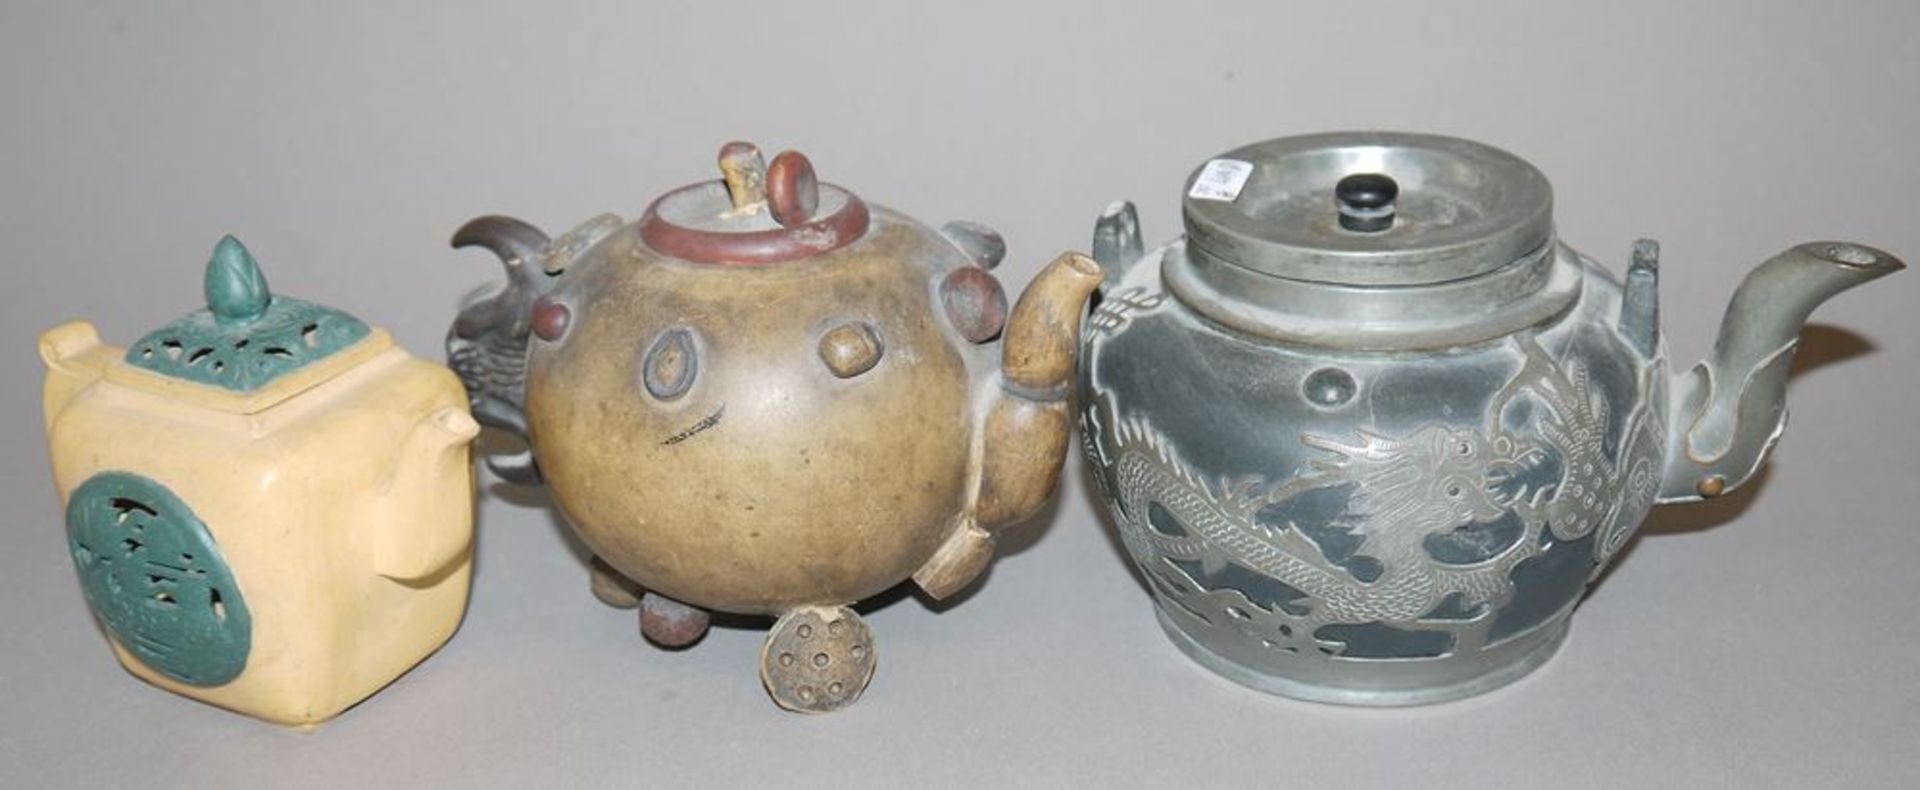 Sechs chinesische Yixing-Teekannen der Qing- und Republik-Zeiten - Bild 2 aus 3